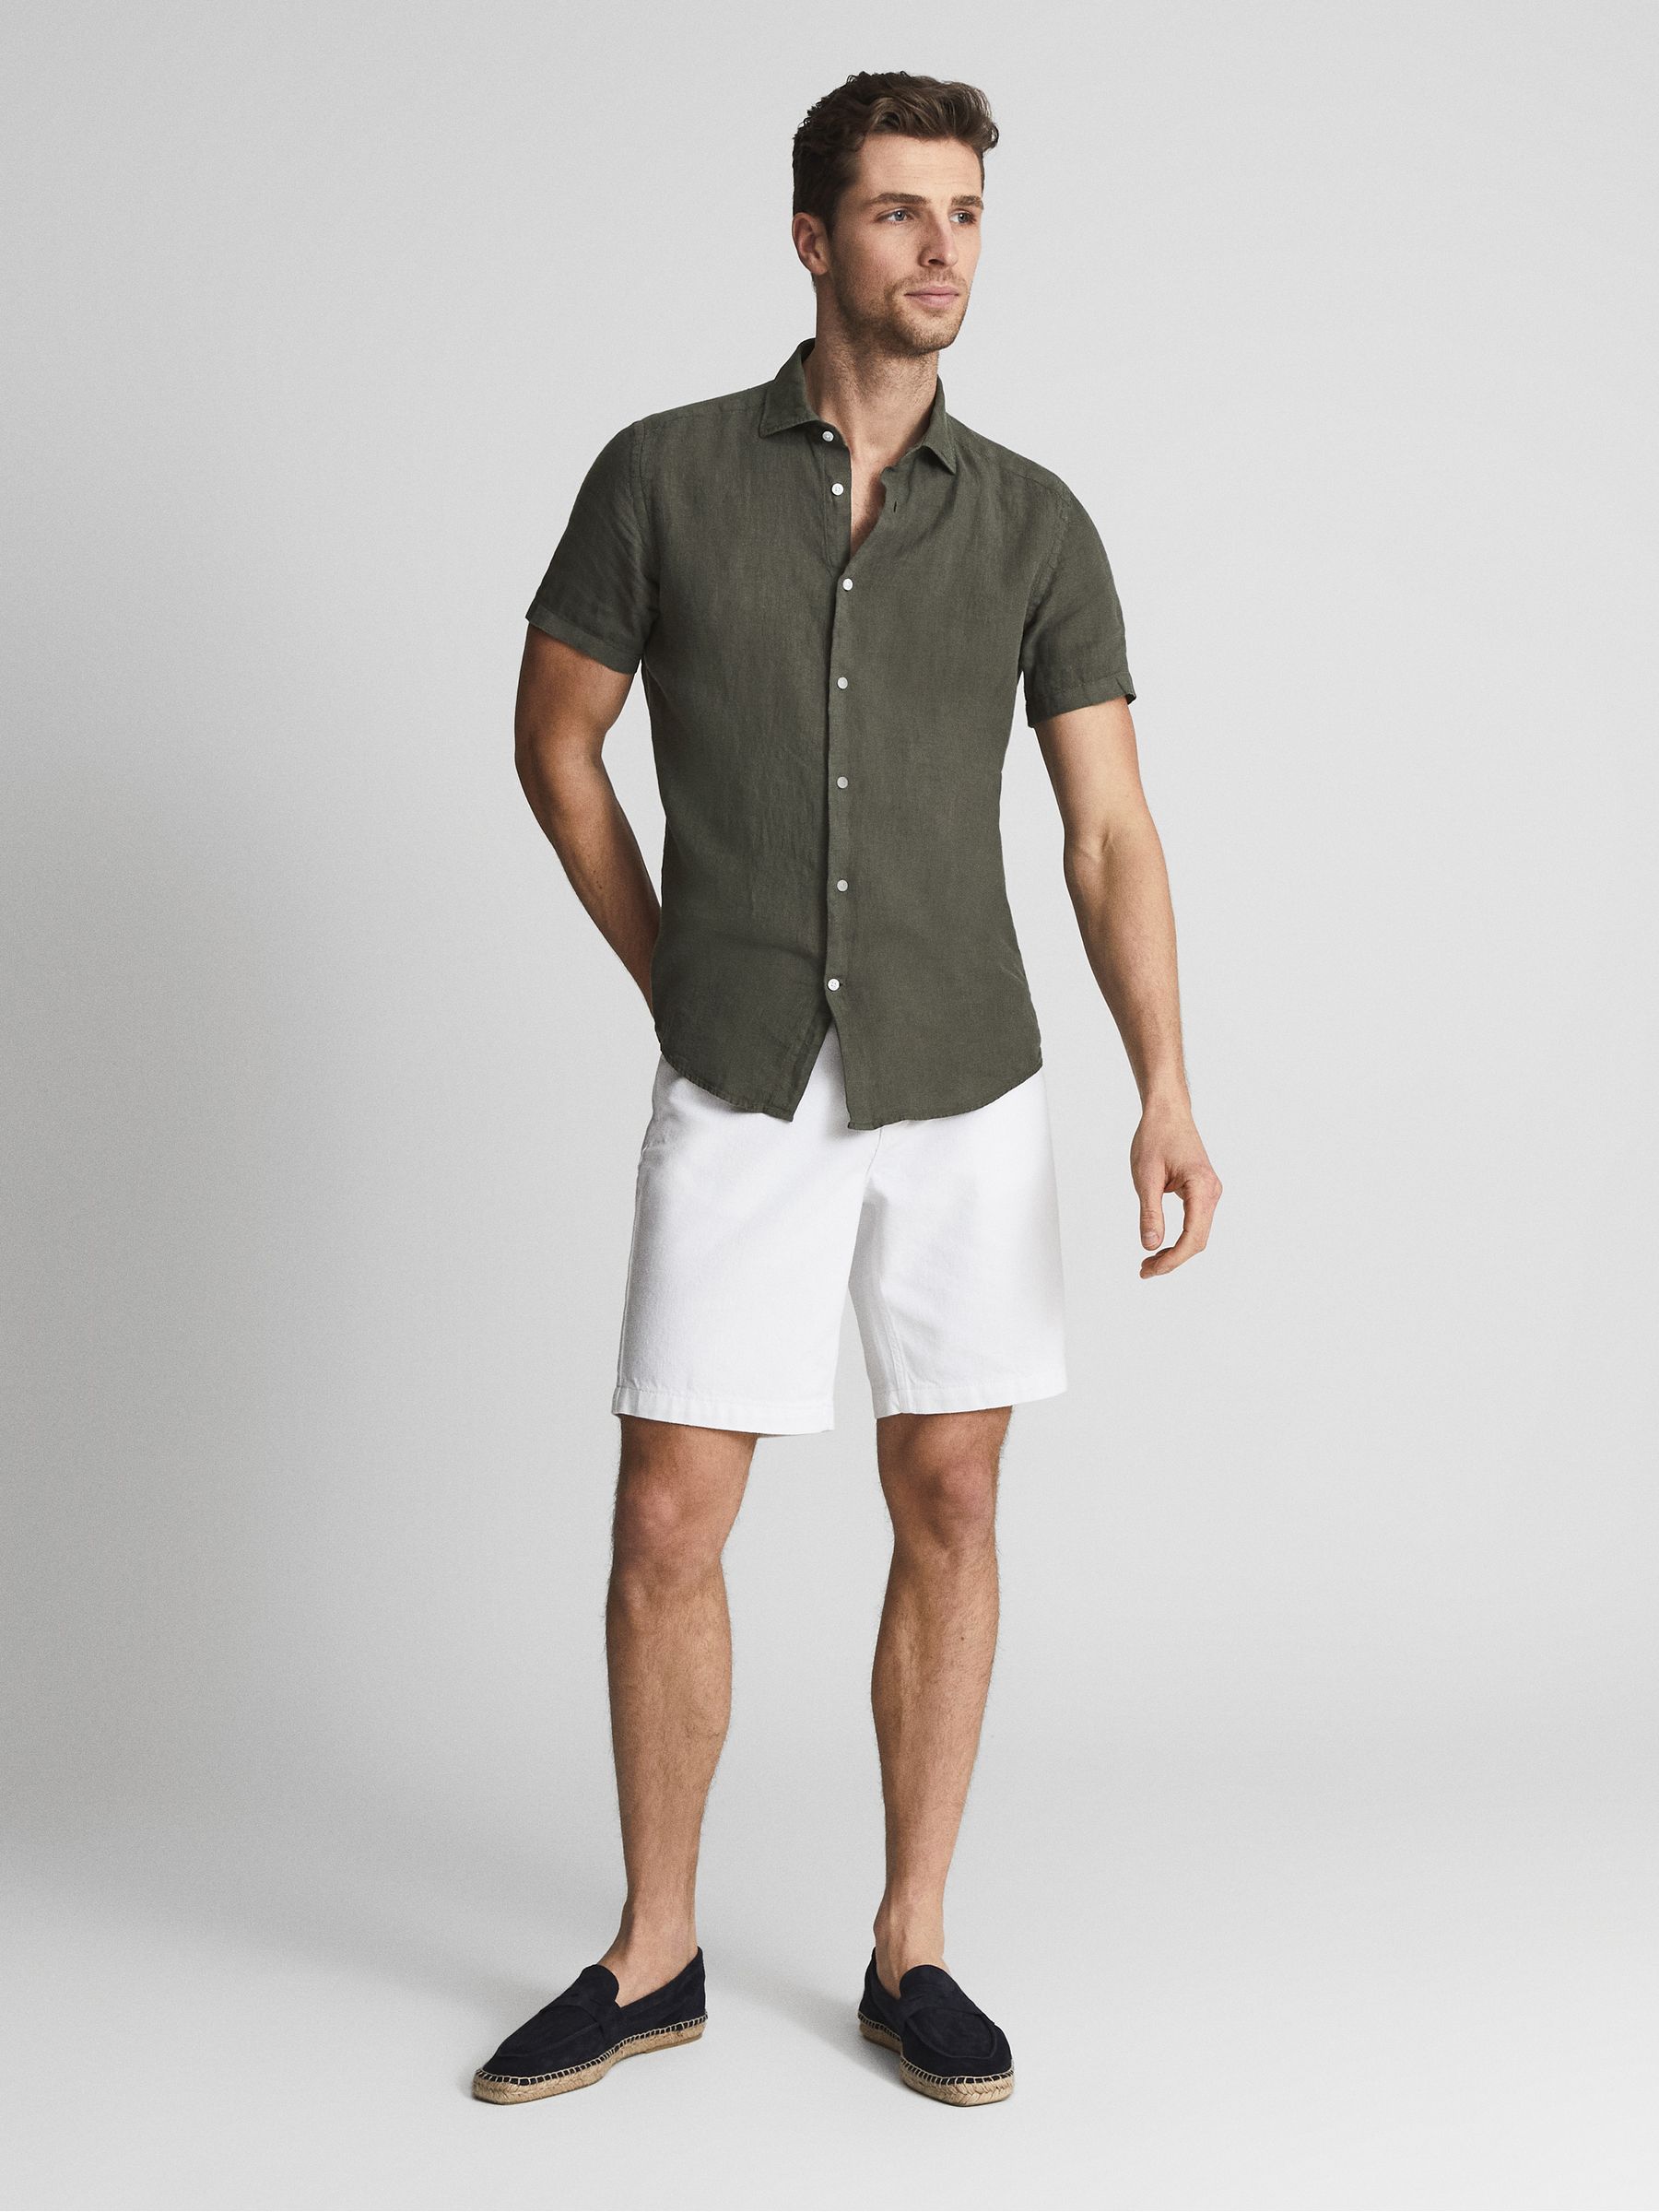 Reiss Holiday Linen Slim Fit Shirt - REISS